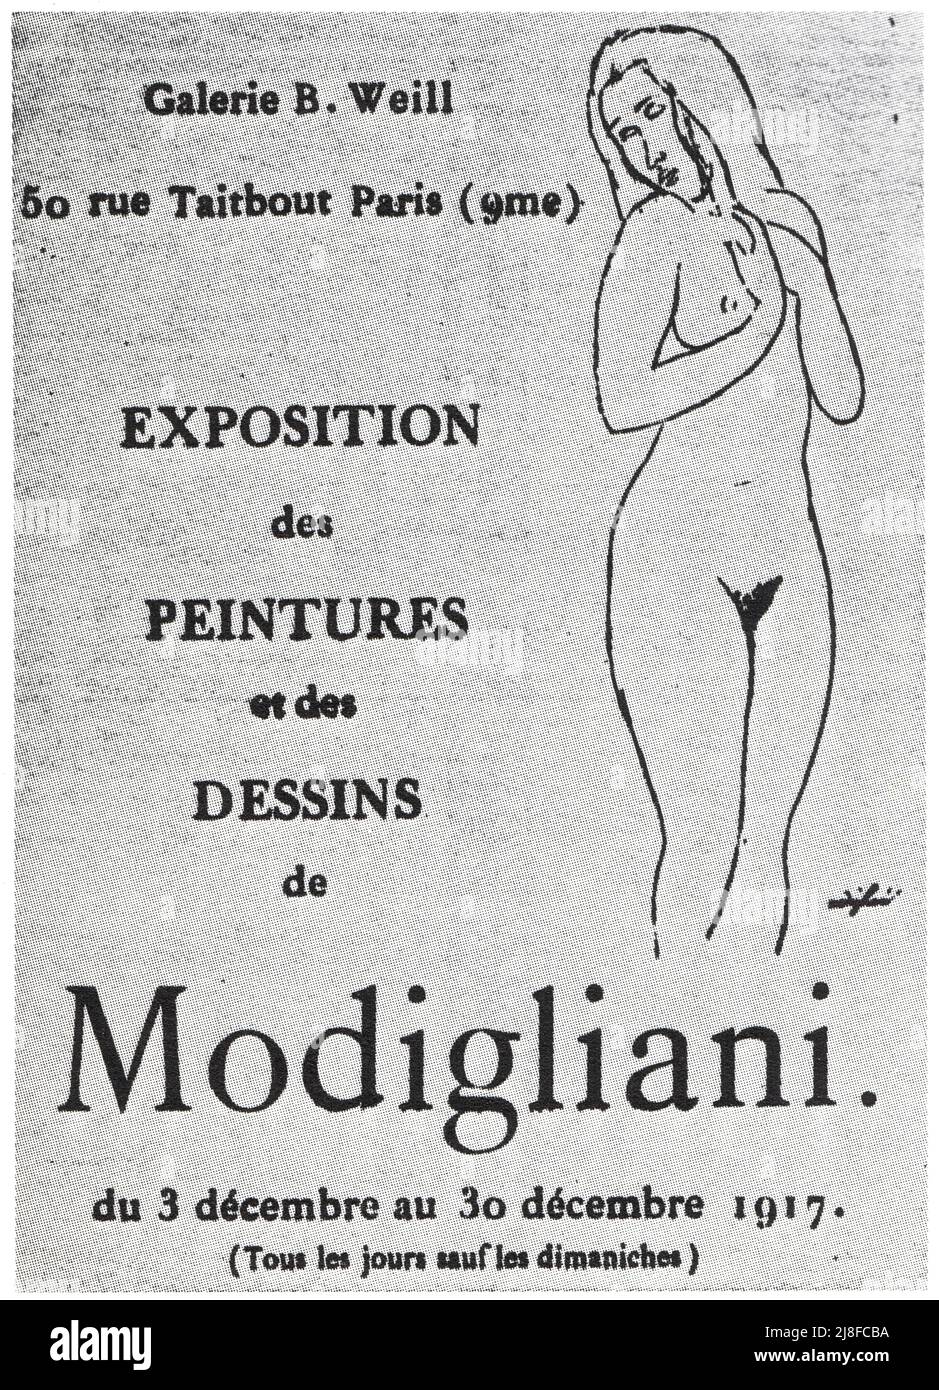 Catalague de la seule exposition consacrée à Modigliani de son vivant, en 1917. Stock Photo